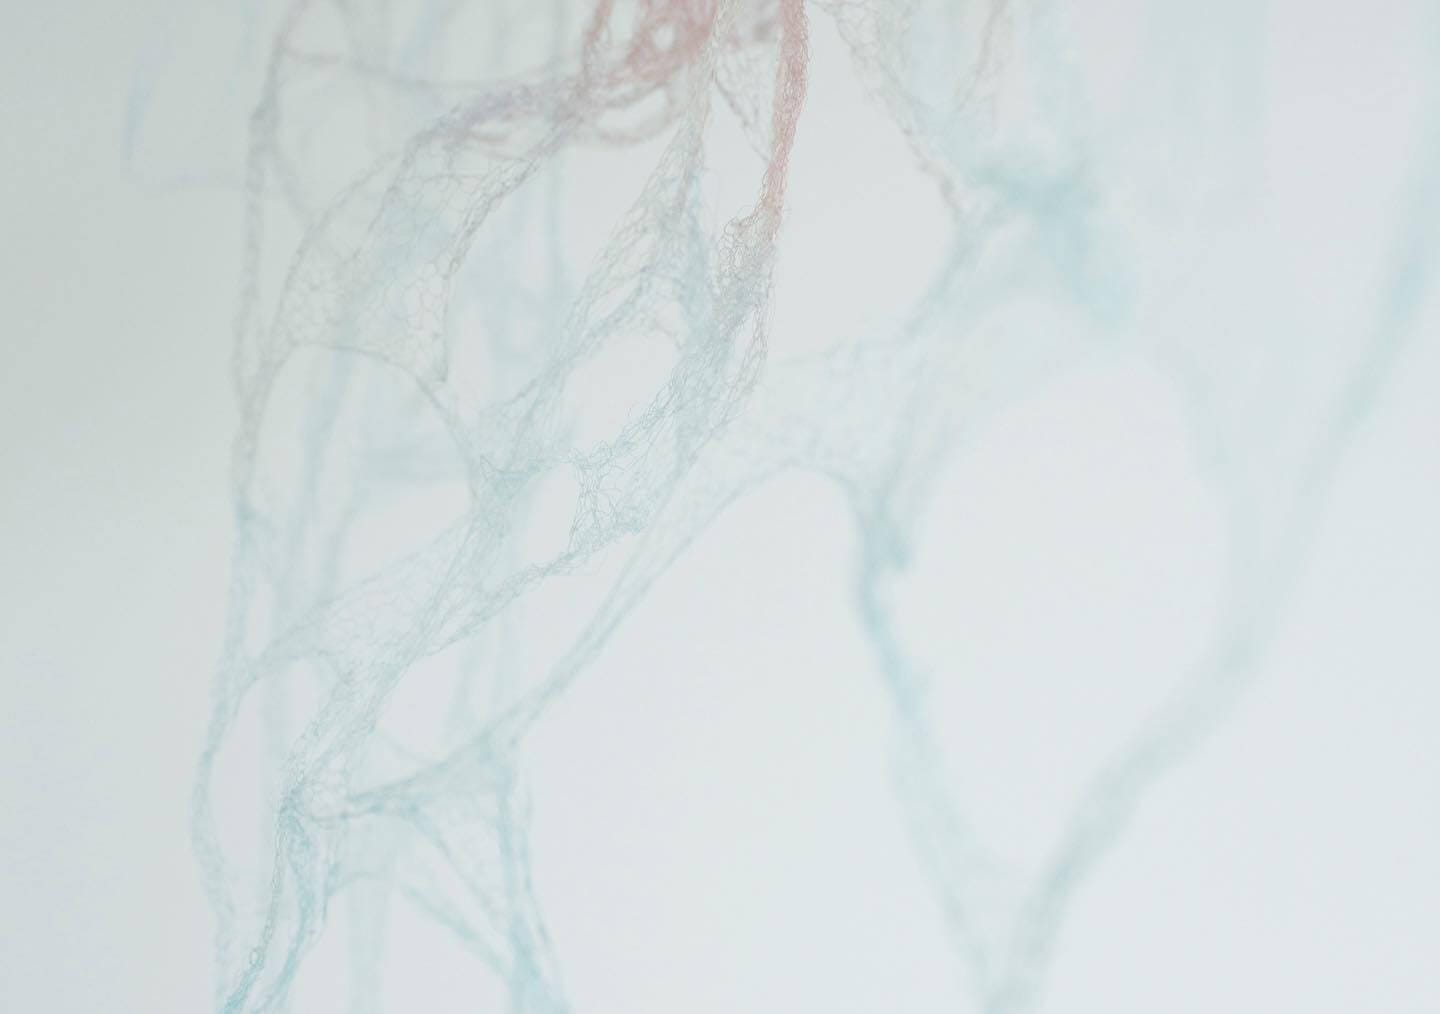 編むという行為により繊細な造形をつくり出す谷口聡子の作品展「自己に由る 」、GULIGULIにて。